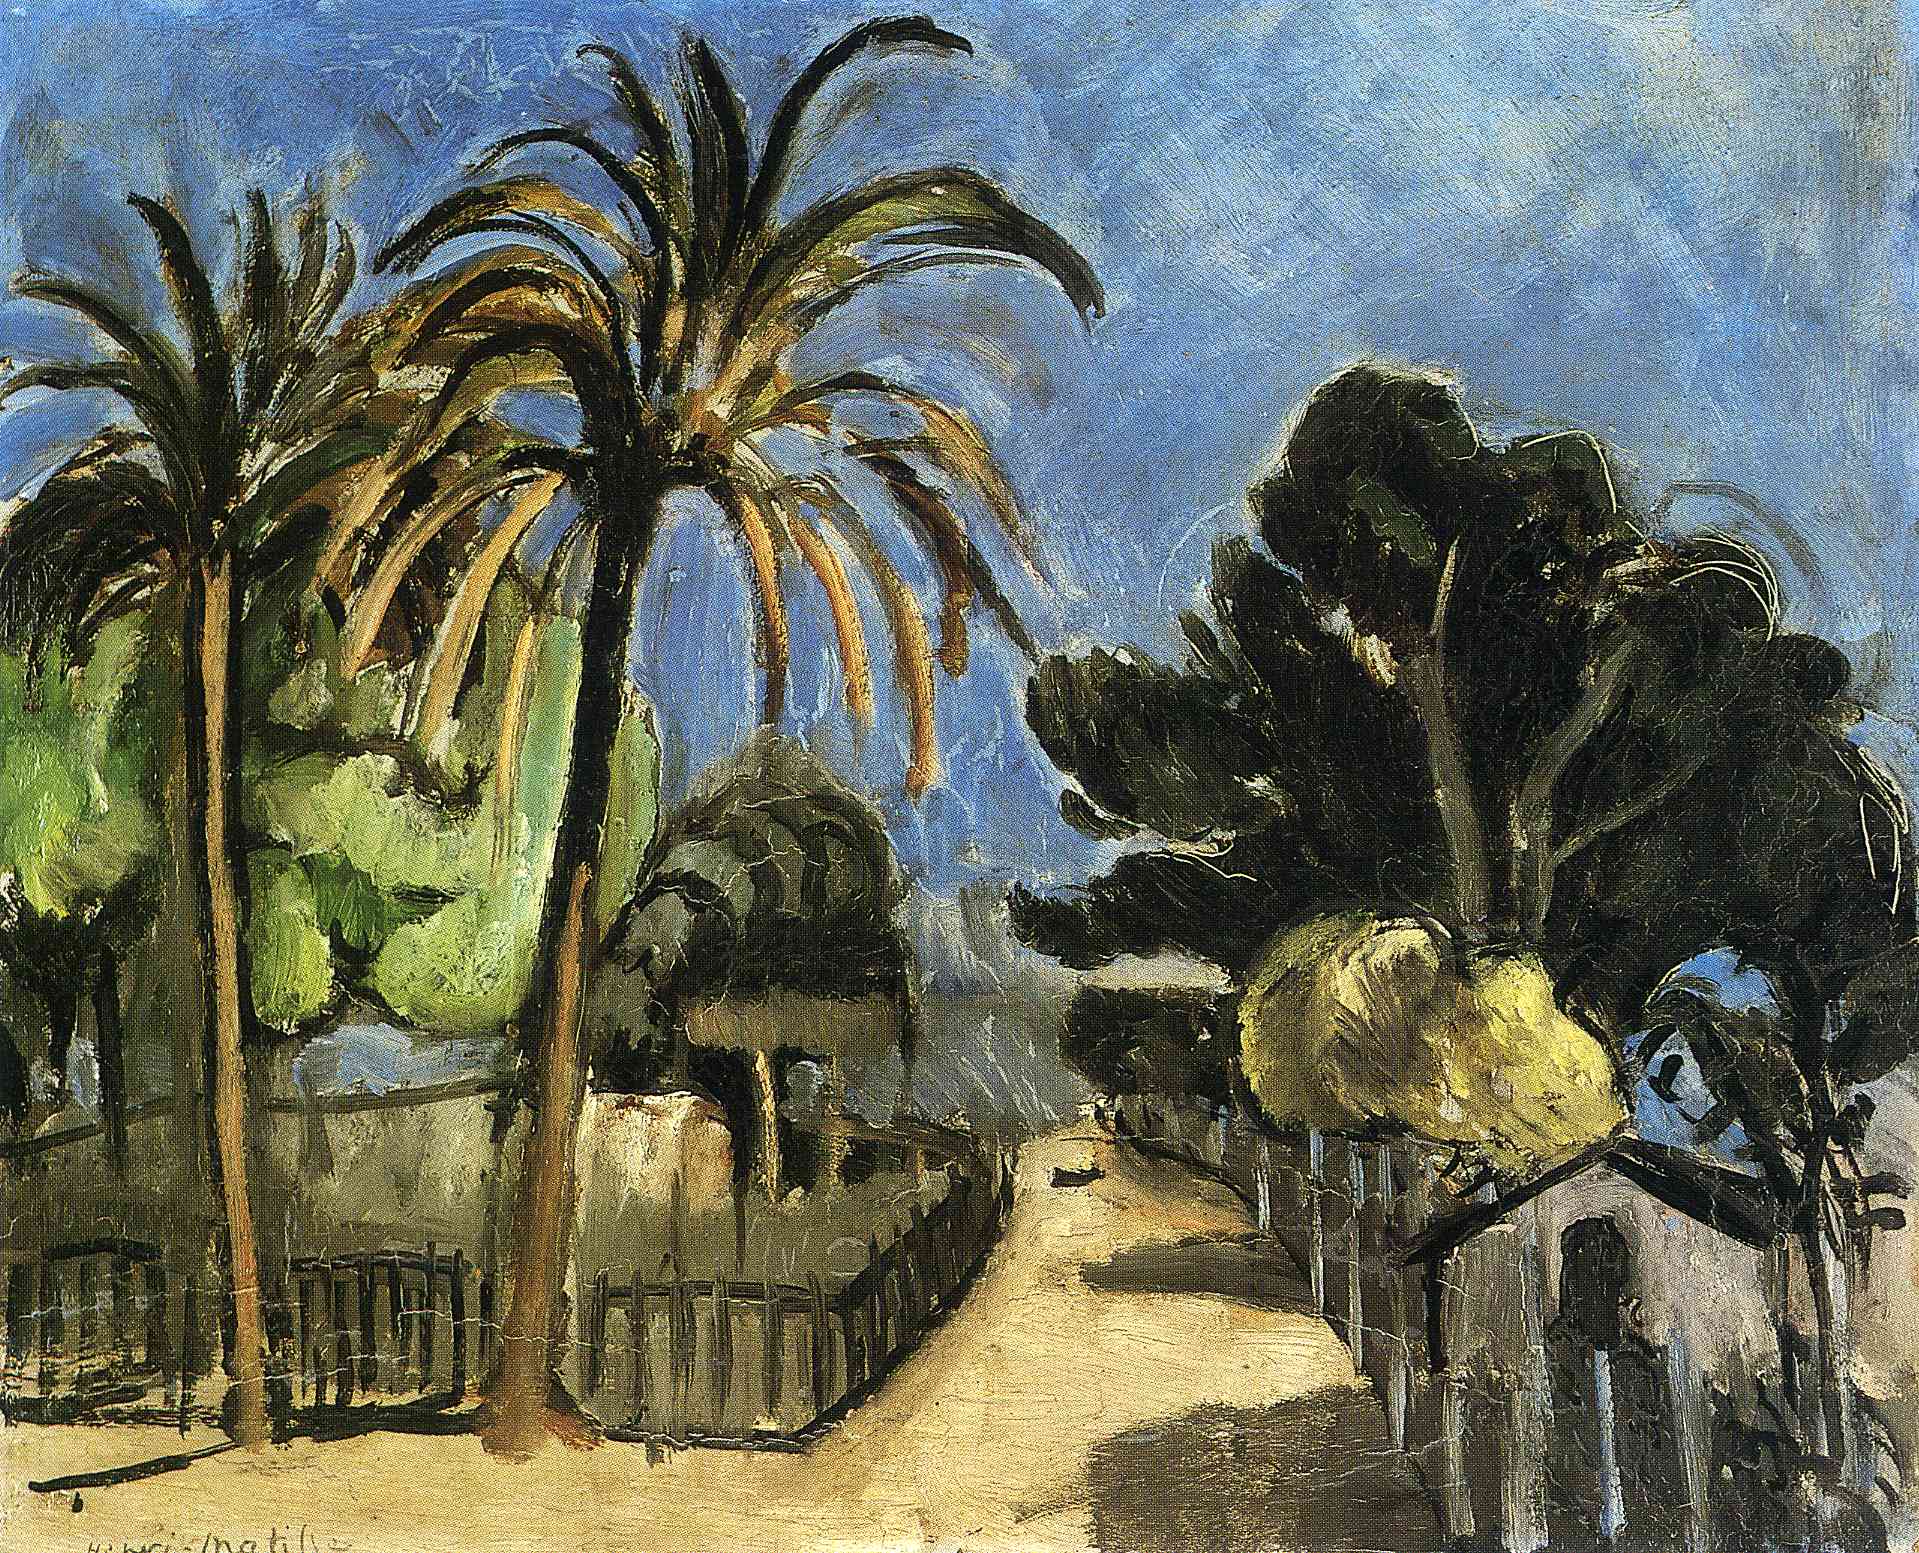 Henri Matisse - Landscape 1917